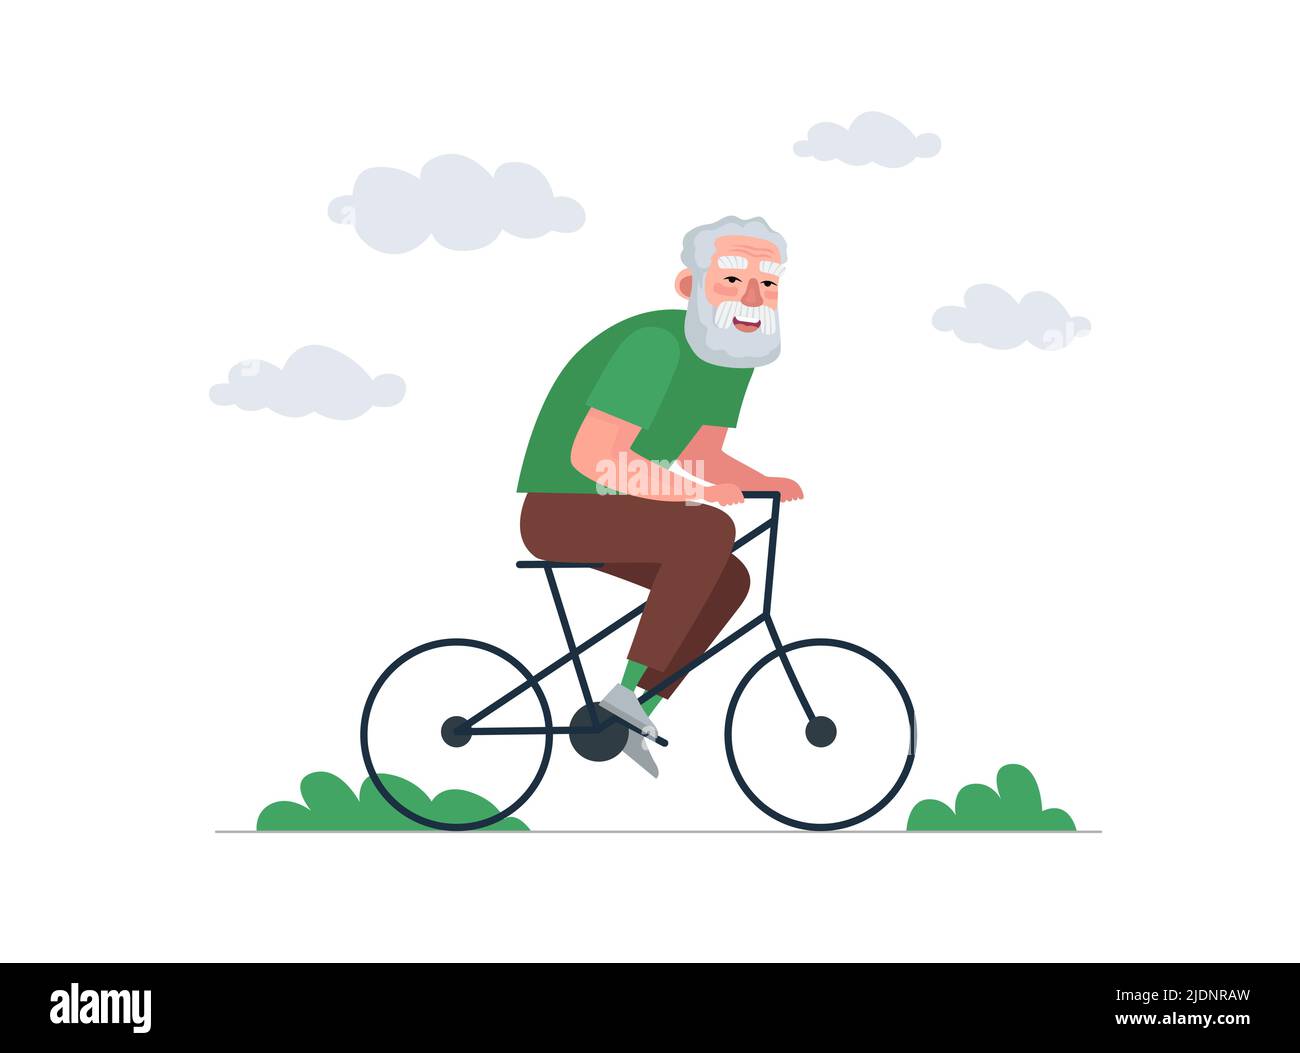 Älterer Mann Spaß und Fahrrad fahren. Ältere Männer fahren auf dem Fahrrad. Alte bärtige Person gesunde Aktivität Lebensstil. Rentner Opa Radfahren. Fröhliche Freizeit für Rentner. Aktiver Großvater-Vektor eps Stock Vektor